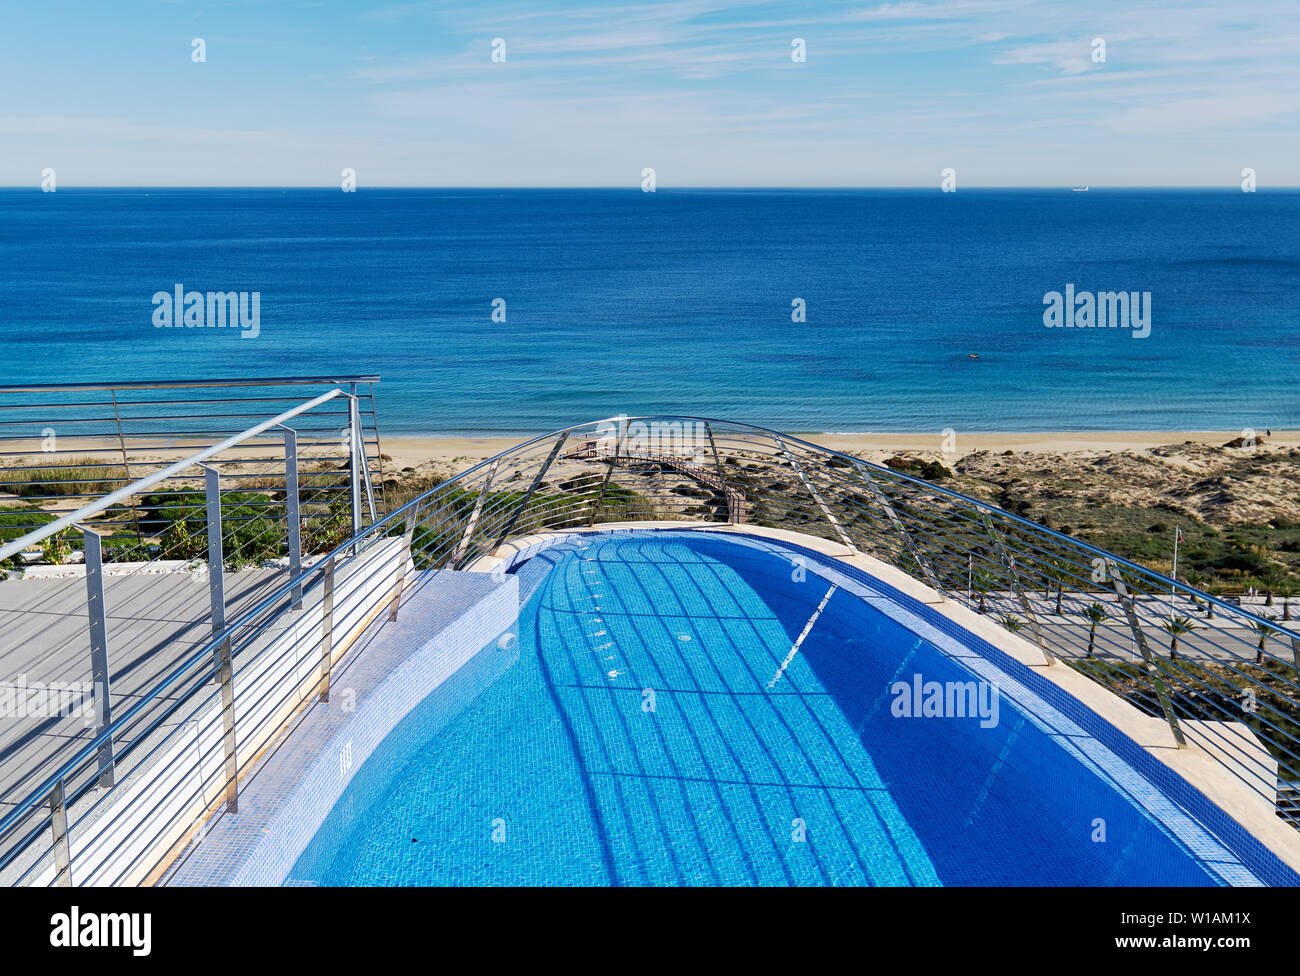 Voir une partie de bord de piscine et vue de la plage de sable sur la mer Méditerranée. Province d'Alicante, Costa Blanca, Espagne Banque D'Images